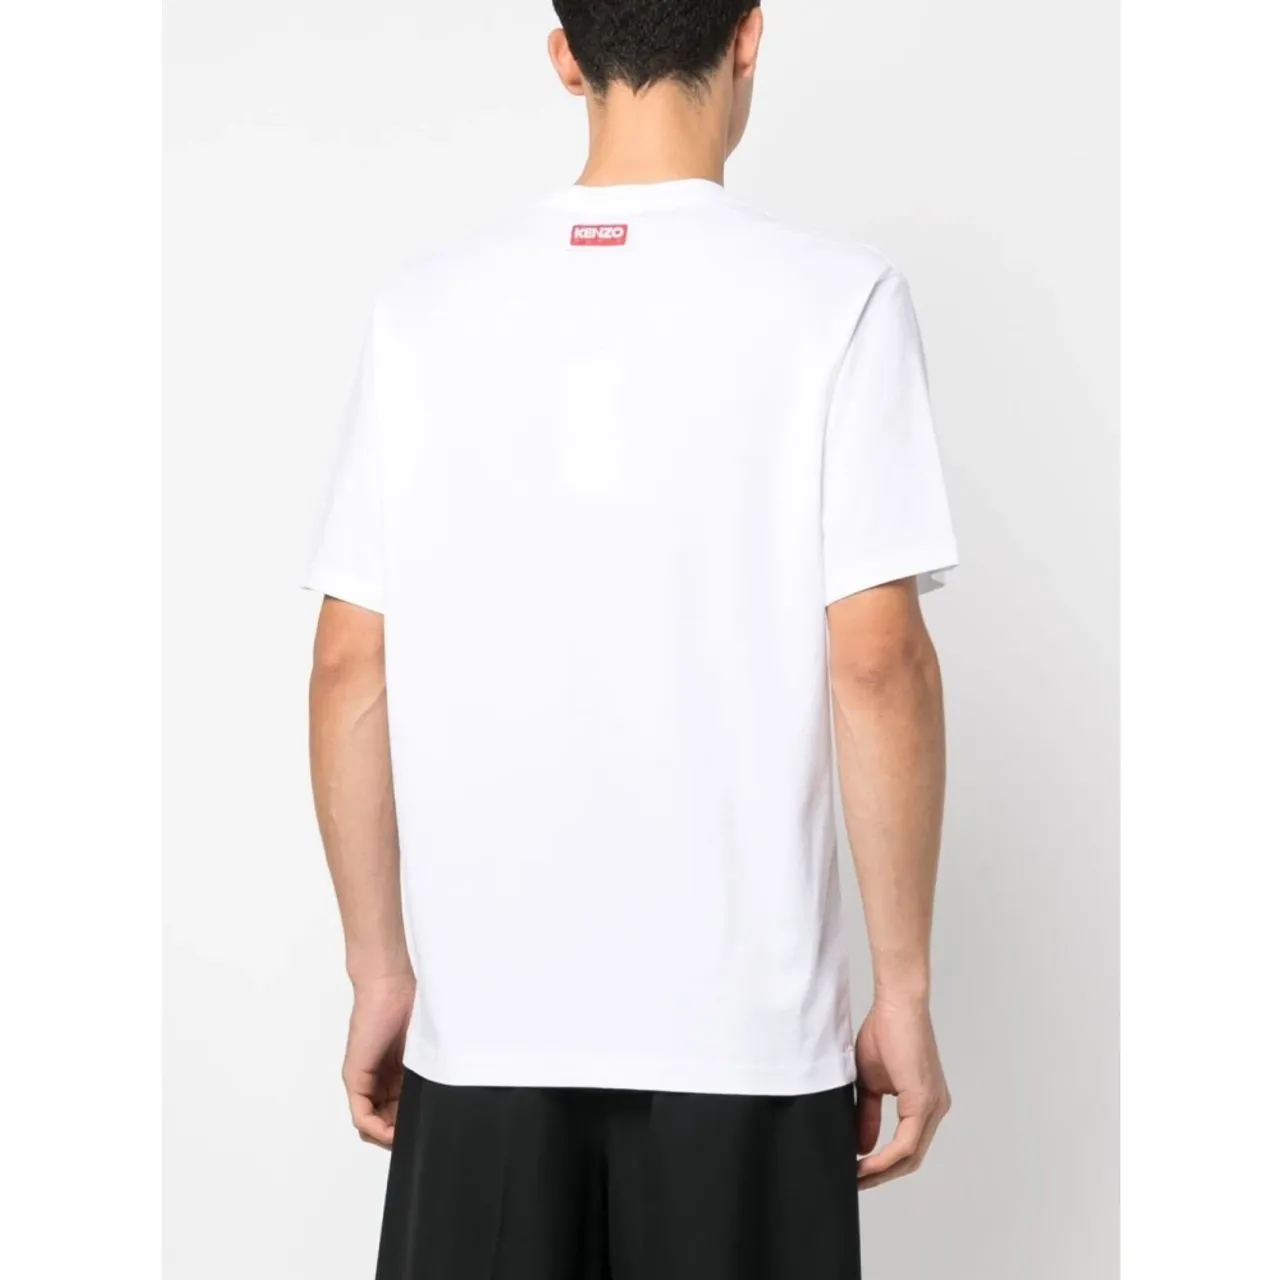 Kenzo , Floral Print Cotton T-shirt ,White male, Sizes: